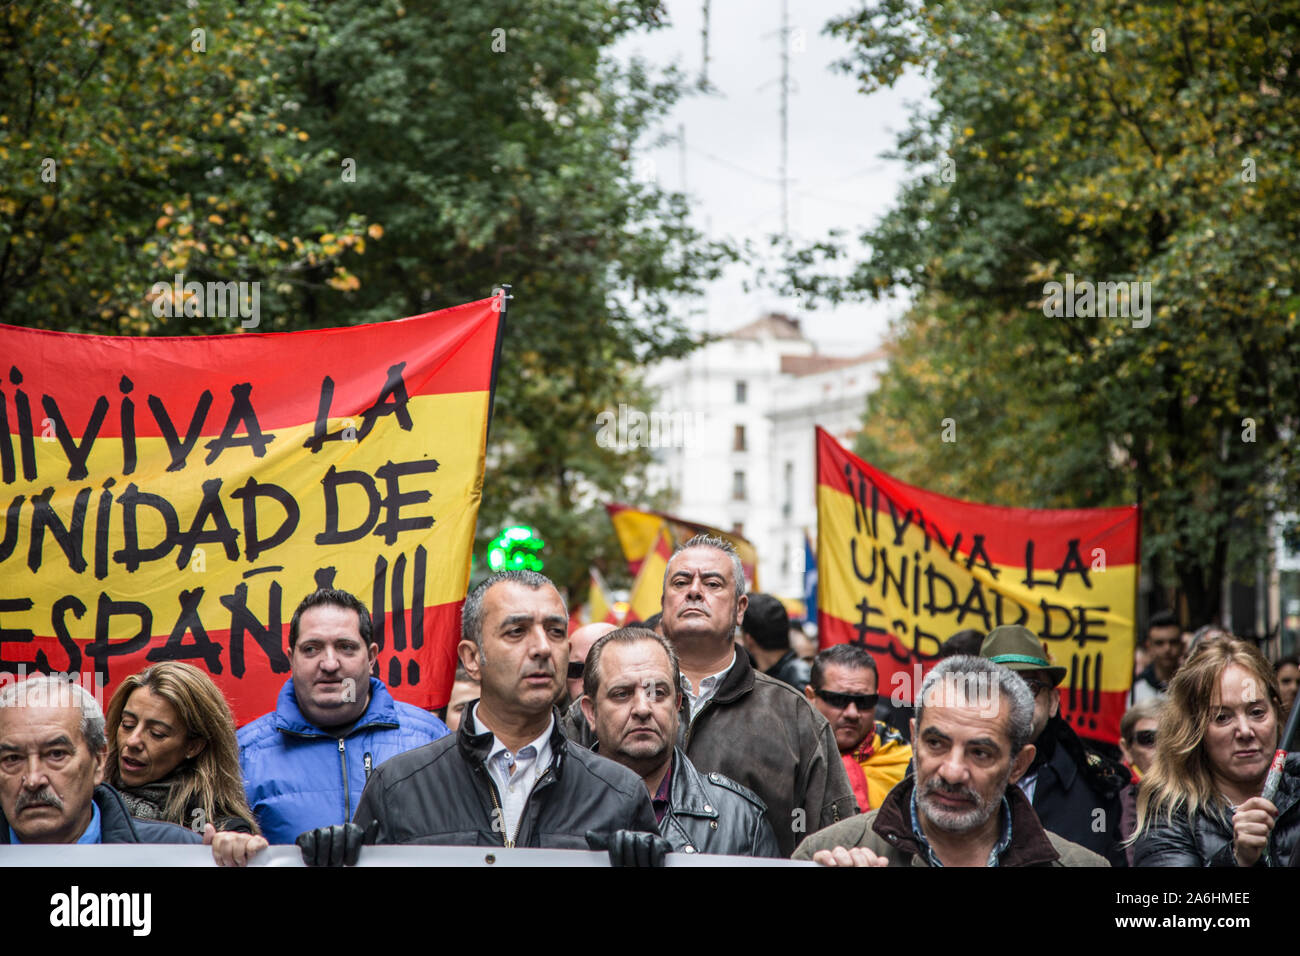 Masse der faschistischen und pro Franco Unterstützer mit Banner marschieren während der Rallye. Jeden November 20th, Hunderte von Franco Regimes unterstützer März bei einer Rallye zu Feiern zu Ehren der Tod des Diktators (am 20. November, 1975). Während der Rallye, drei FEMEN Aktivisten irrupted verlangt, dass faschistische Demonstrationen in Spanien legalisiert werden sollte. Sie wurden angegriffen durch Demonstranten und ein Mann wurde festgenommen. Stockfoto